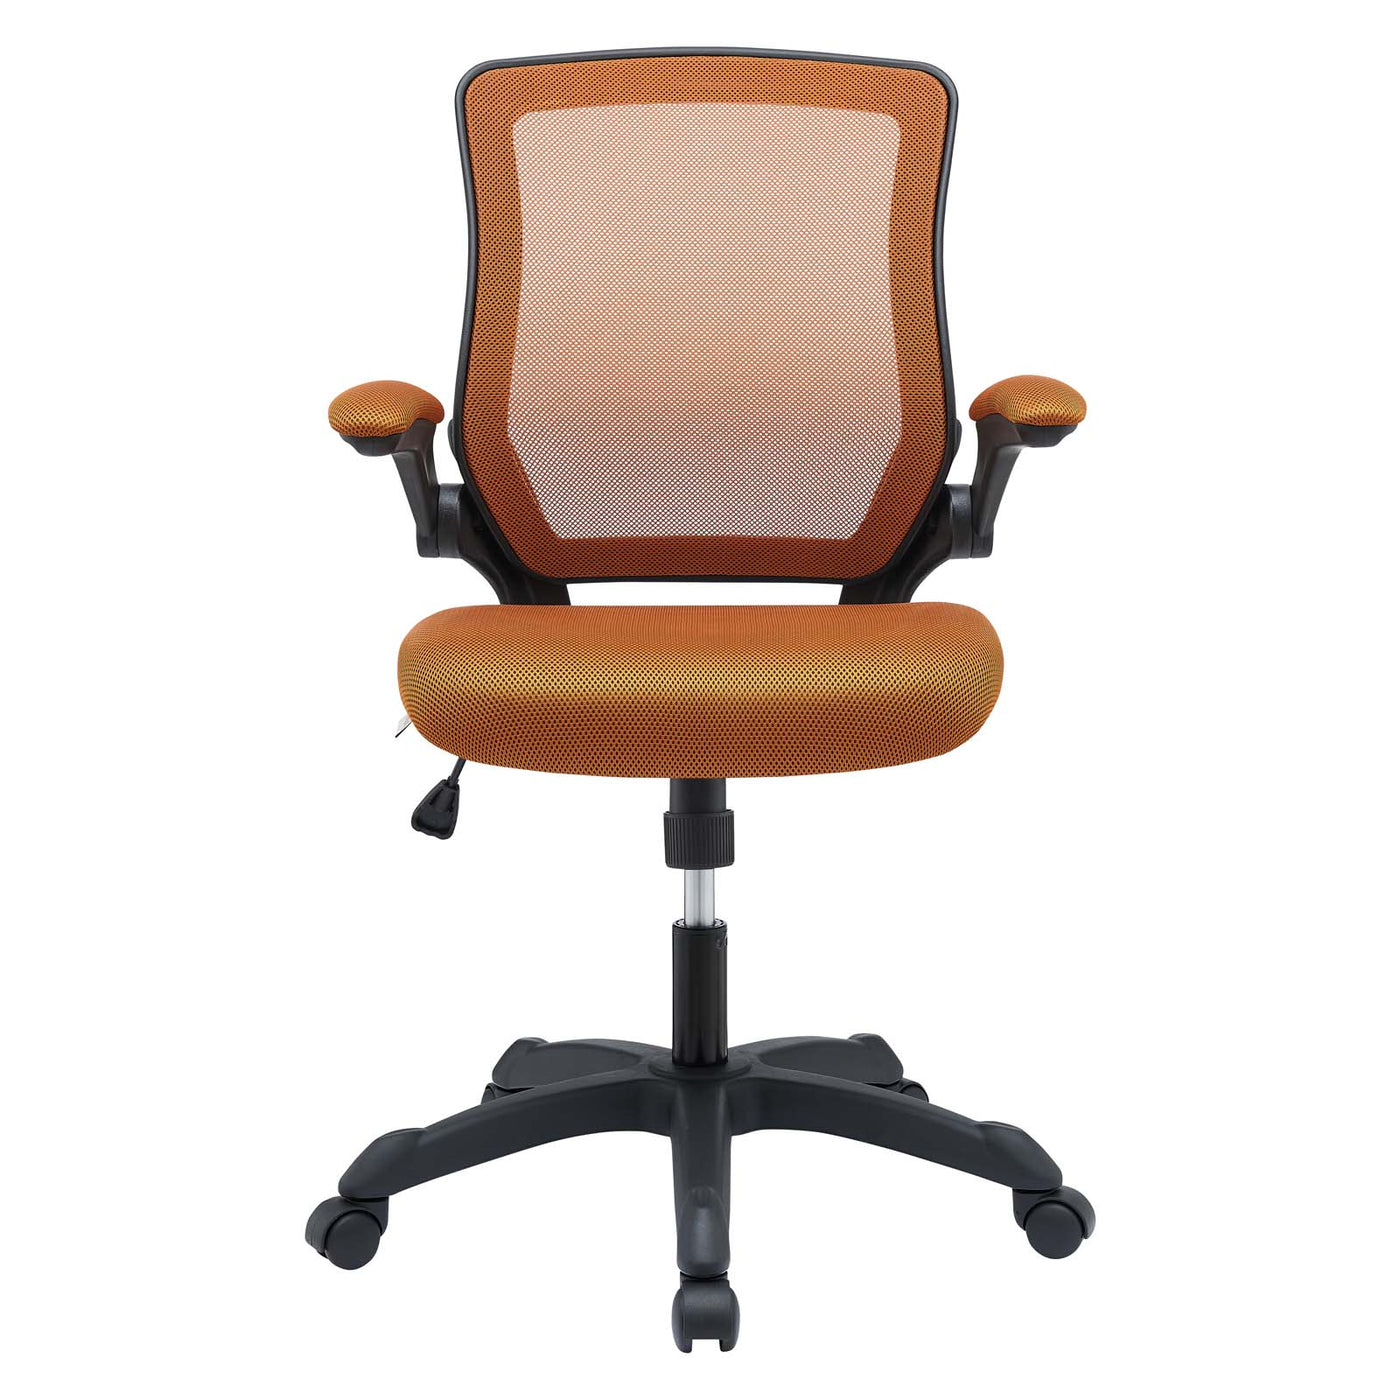 Veer Mesh Office Chair